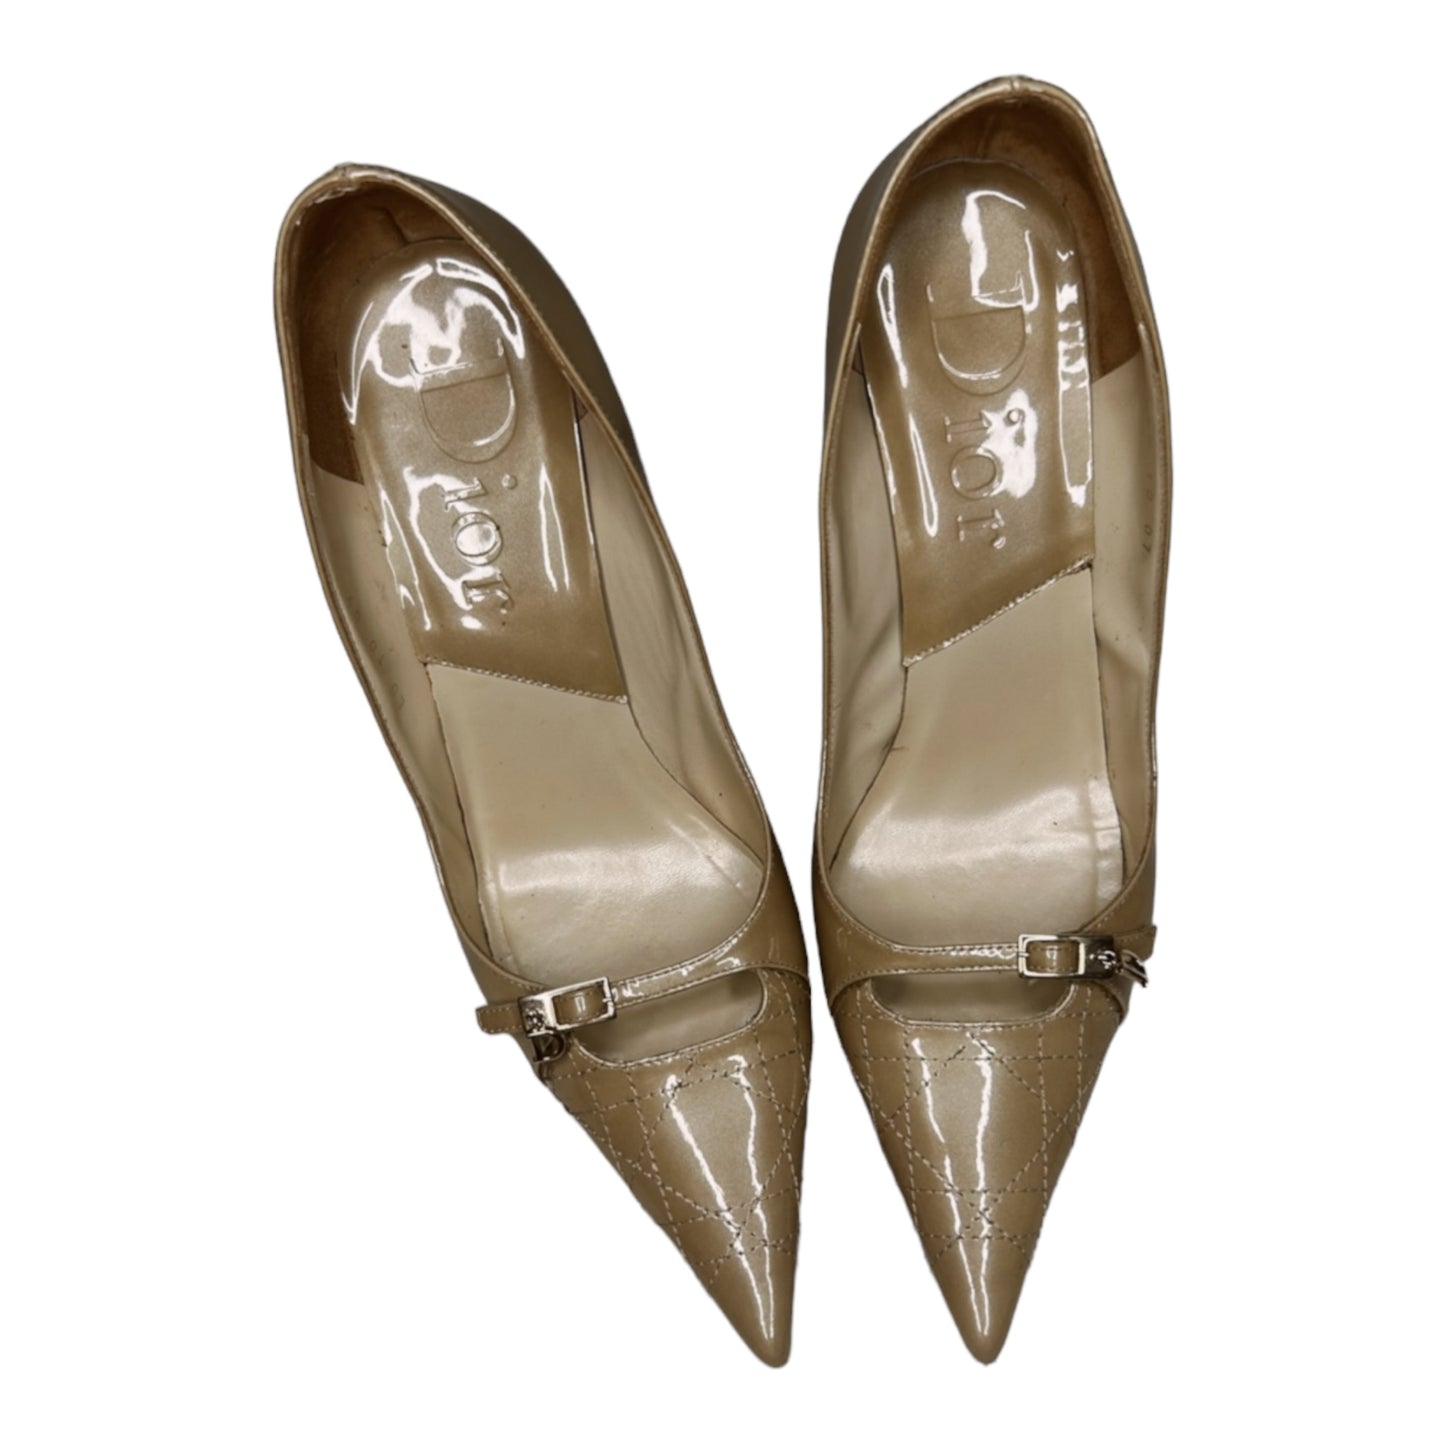 Vintage Dior nude heels with logo